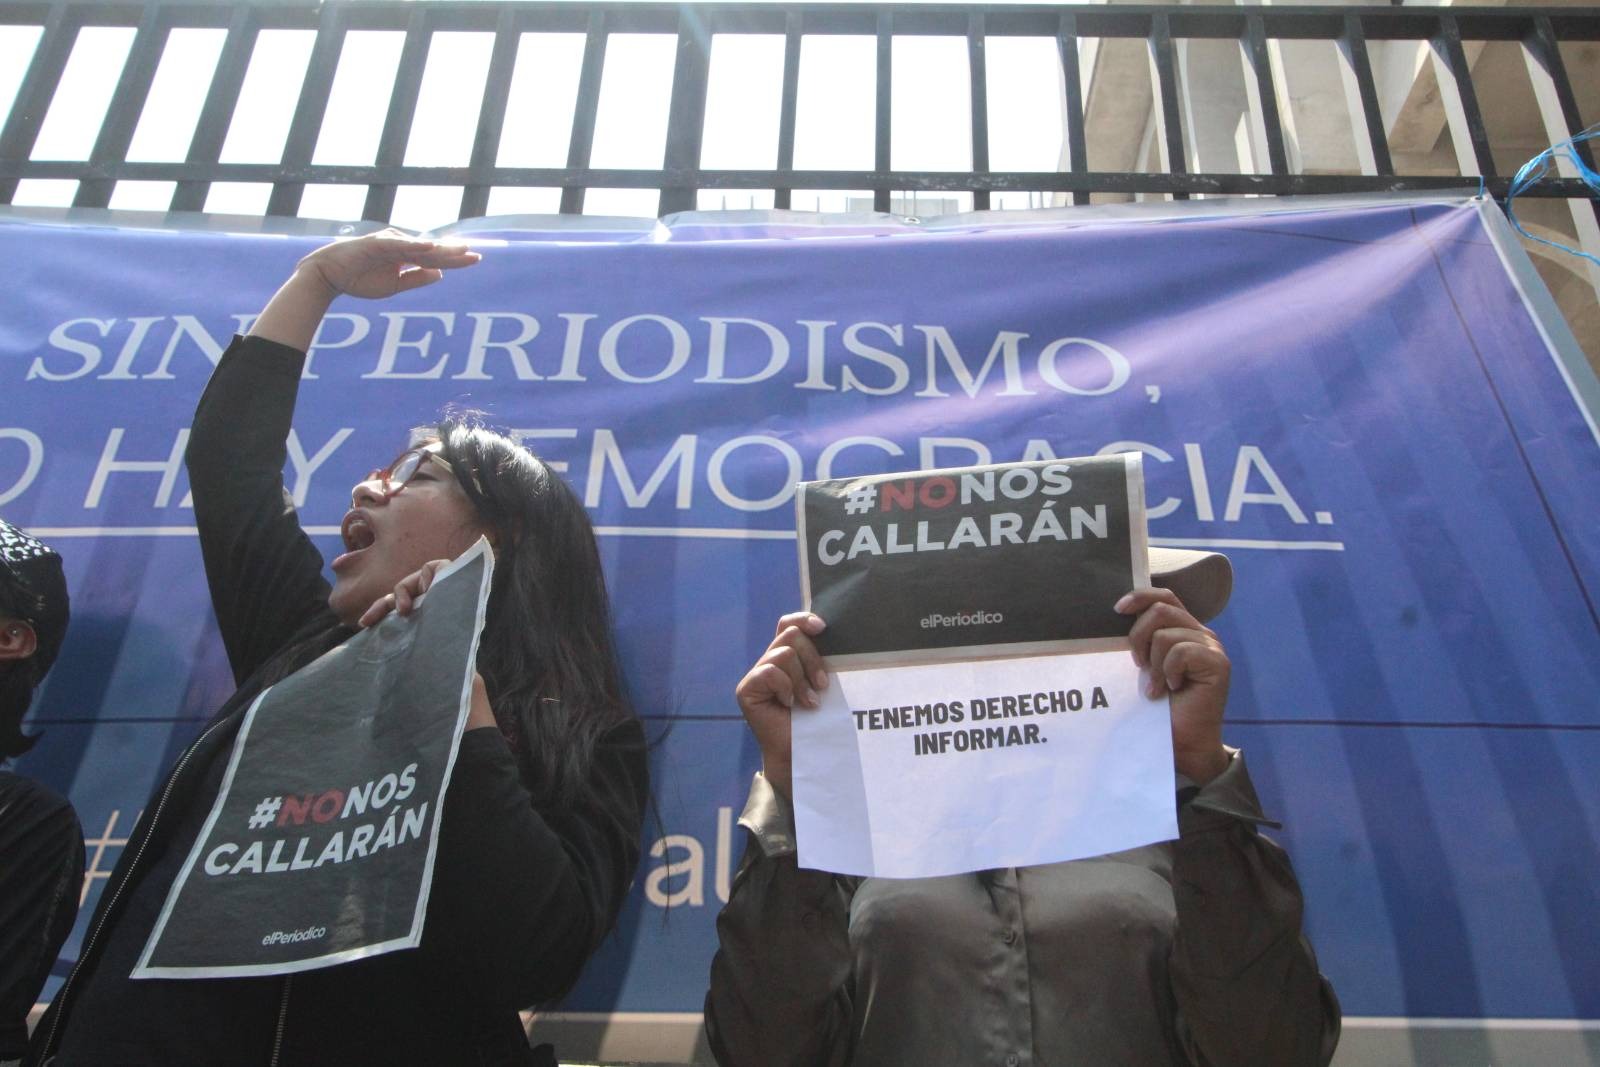 La protesta del gremio periodístico exigió el cese de la persecución penal en contra del trabajo periodístico.   Foto de Juan M. Rosales